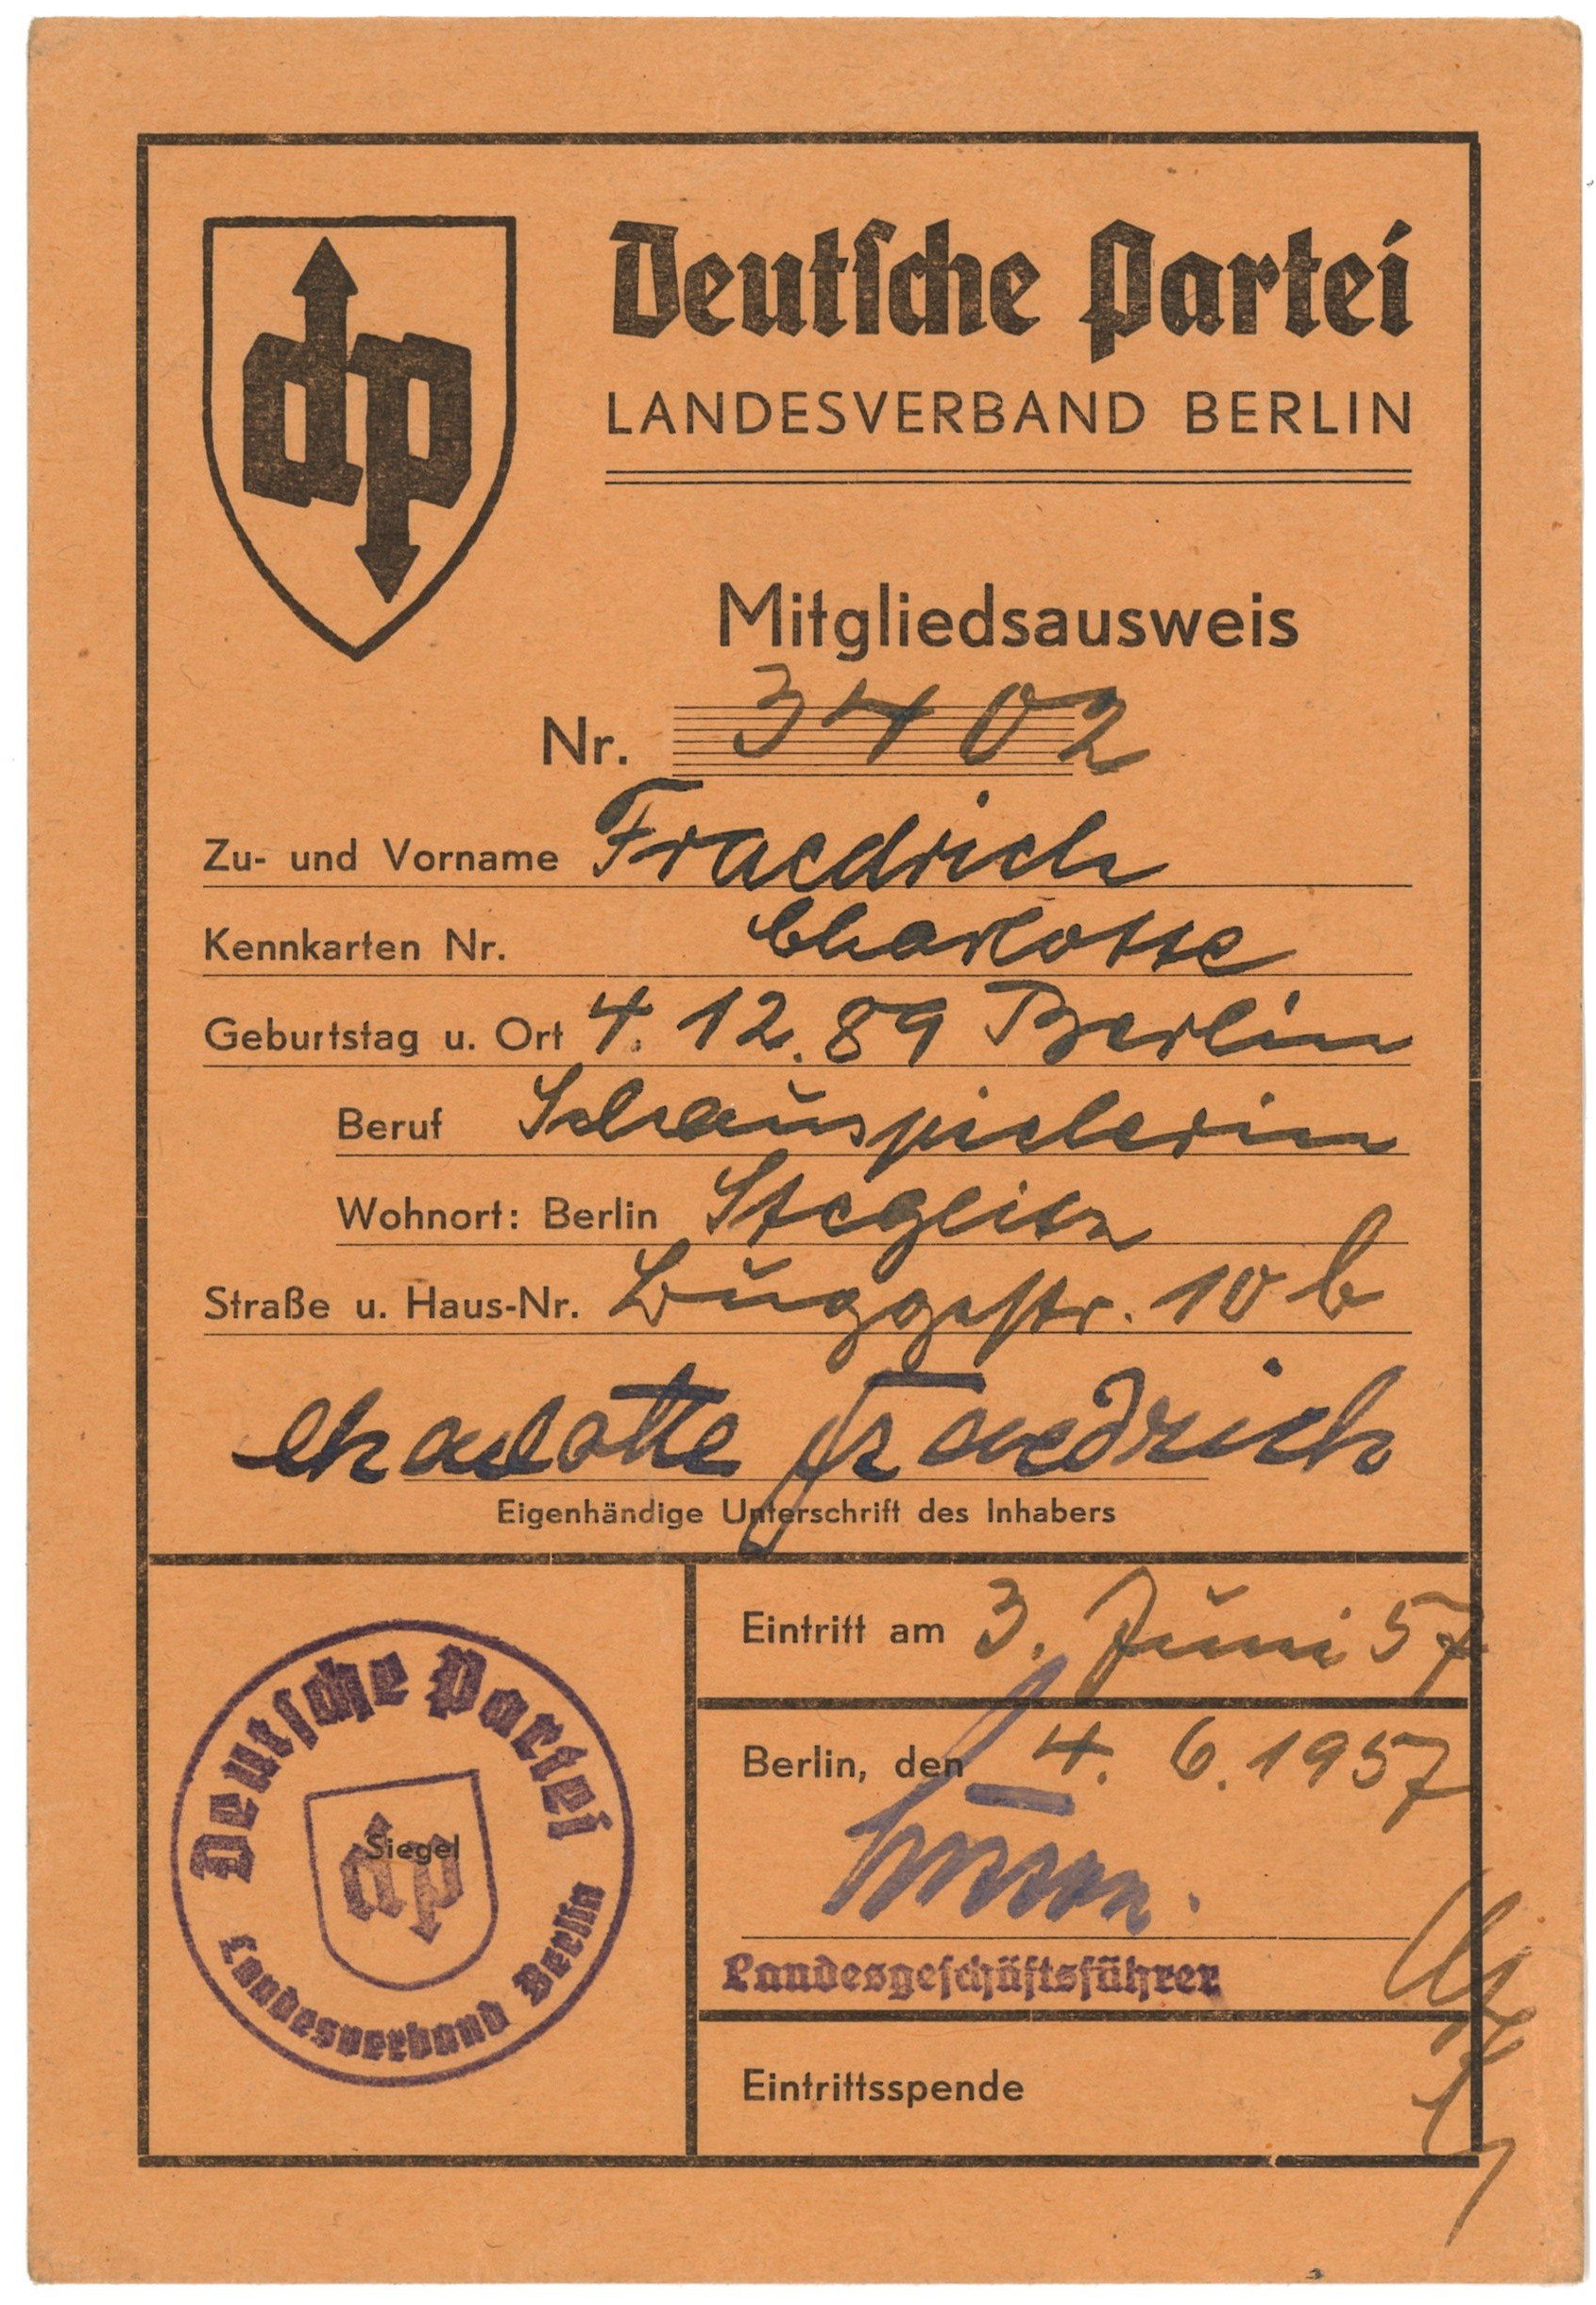 Mitgliedskarte der Deutschen Partei, Landesverband Berlin, für die Schauspielerin Charlotte Fraedrich 1957–1958 (Landesgeschichtliche Vereinigung für die Mark Brandenburg e.V., Archiv CC BY)